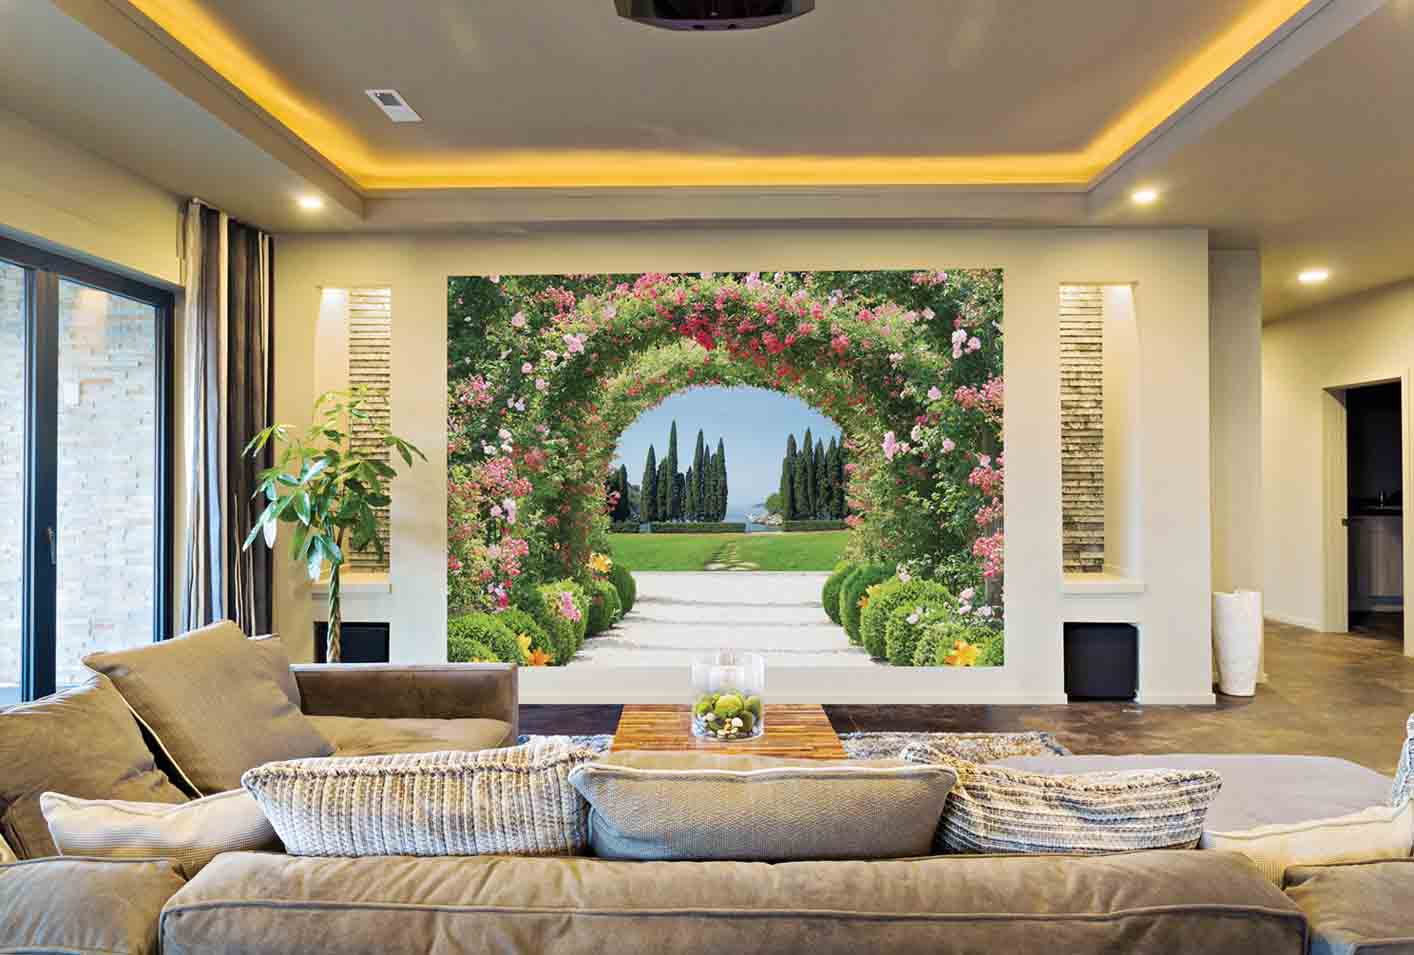 Vẽ tranh tường 3D phòng khách chủ đề hoa cây tạo cảm giác vườn rộng, tràn đầy ánh nắng